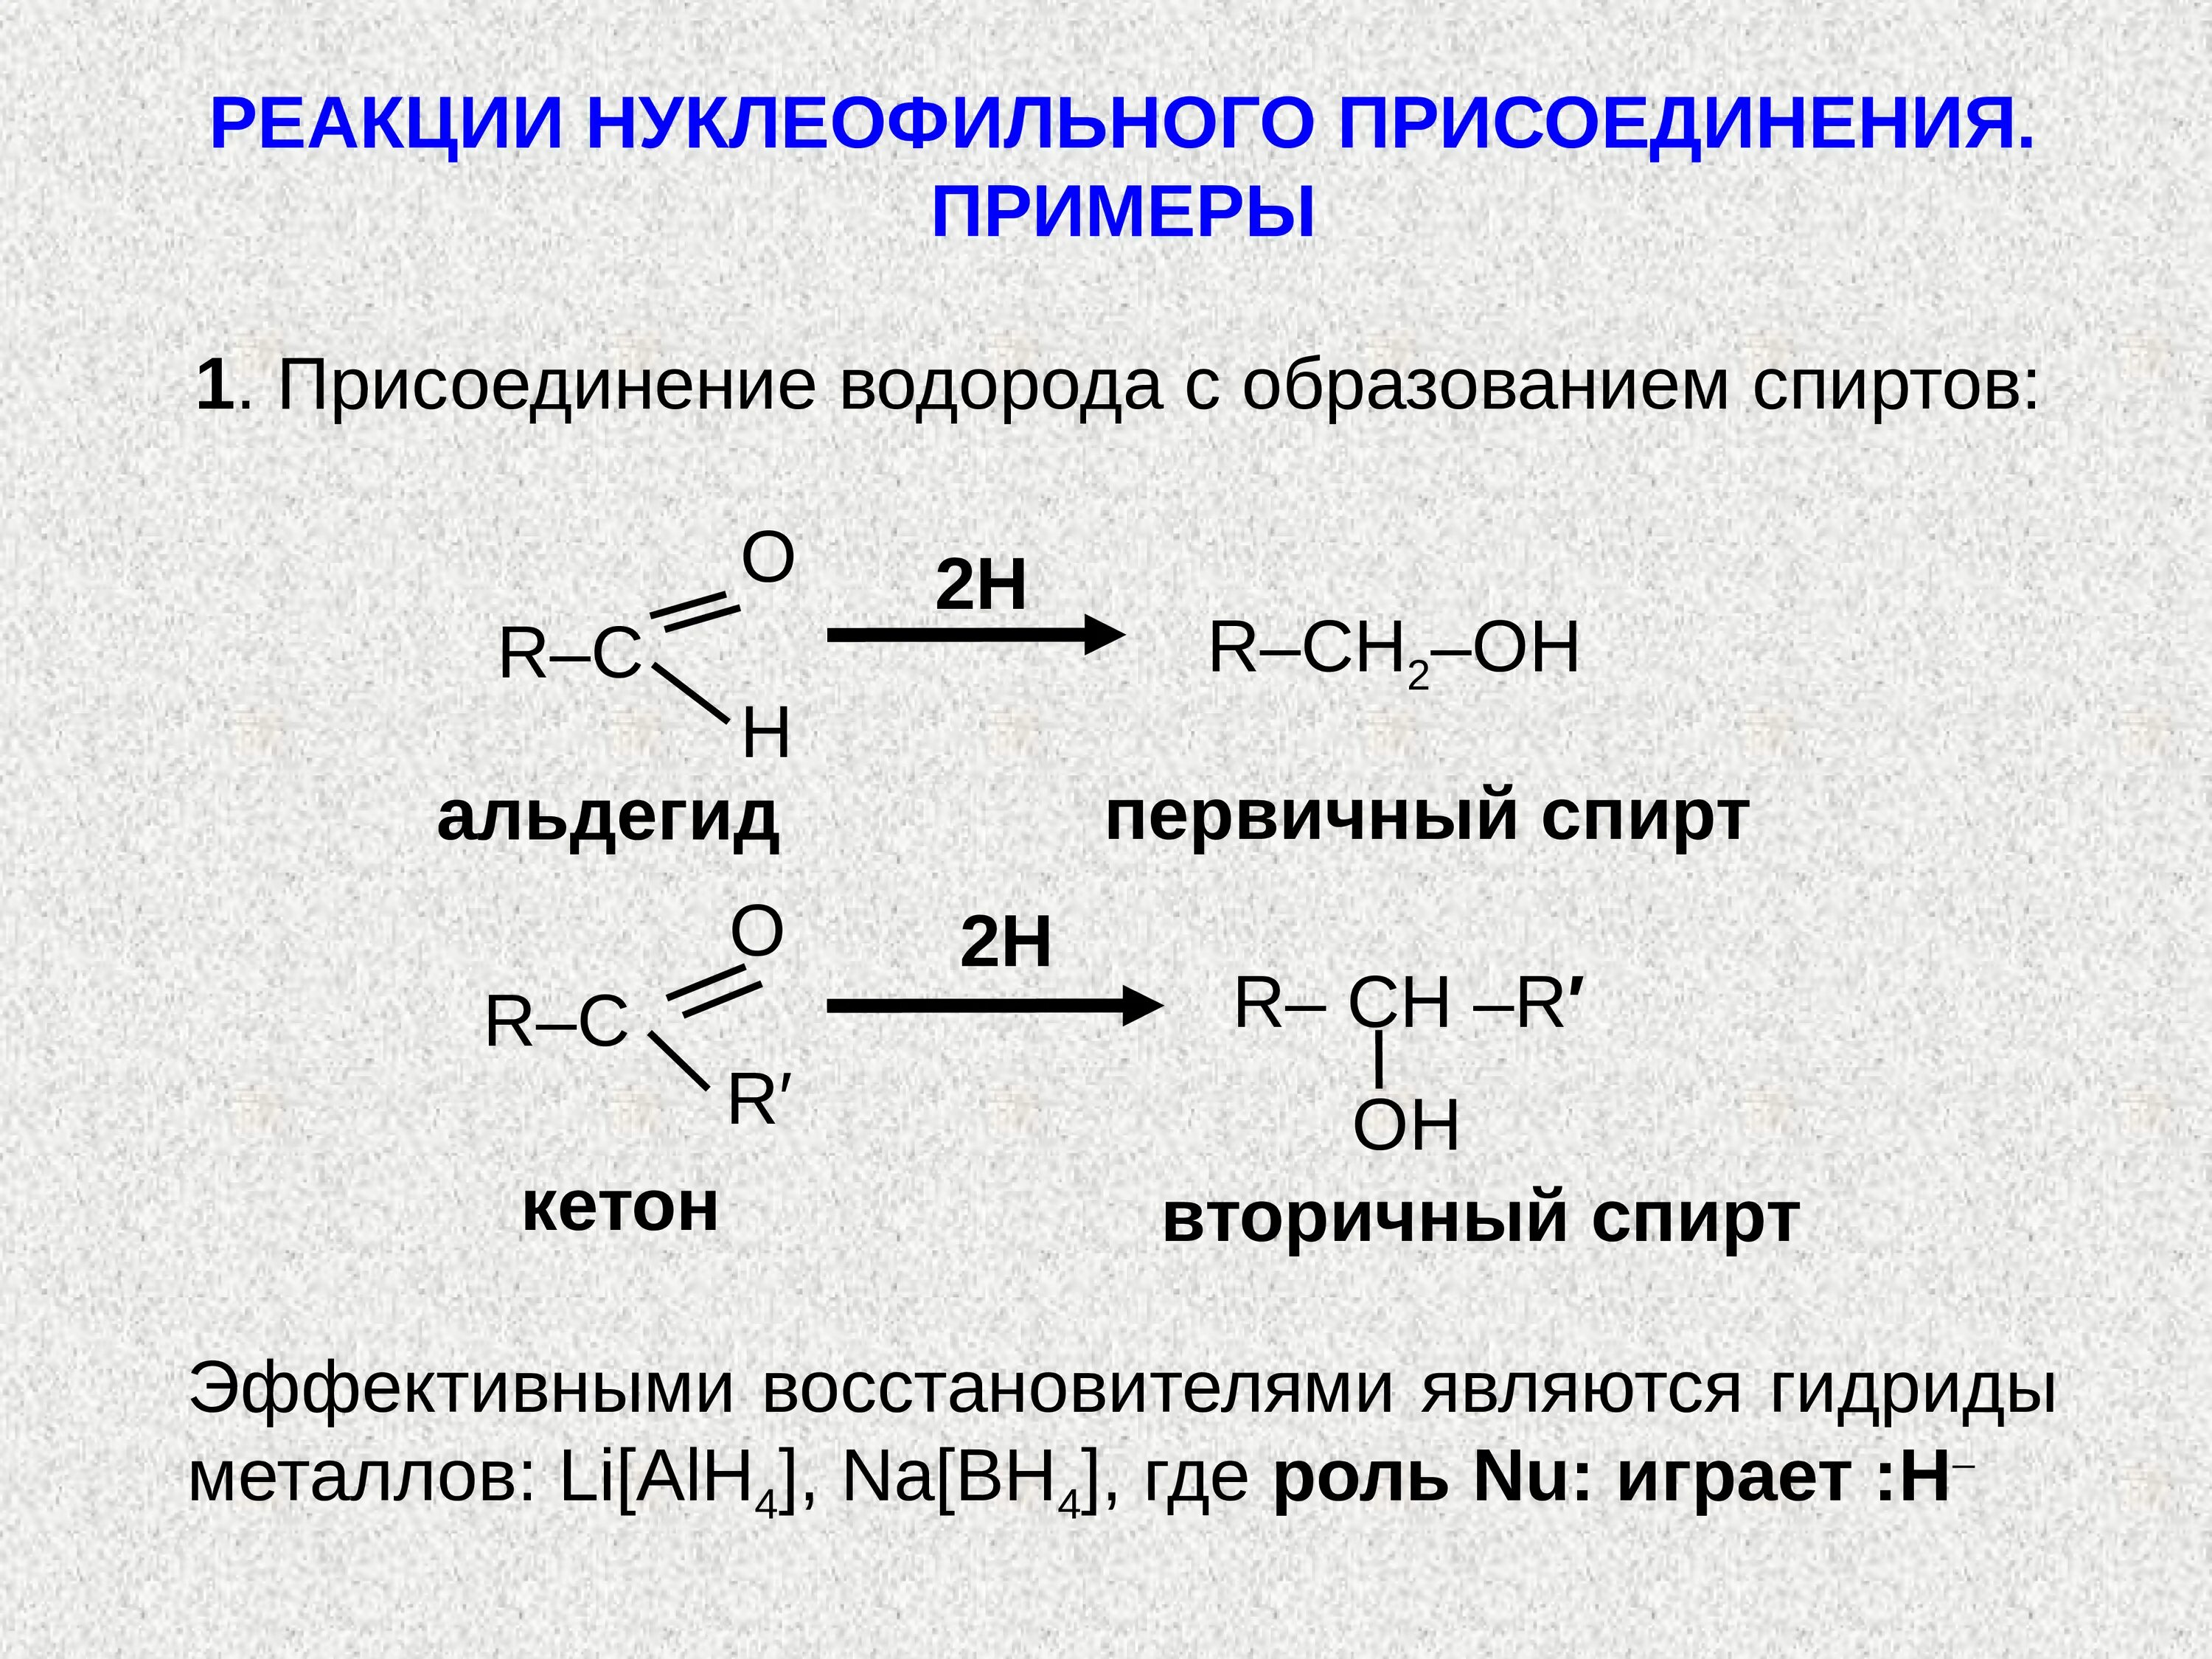 Реакция нуклеофильного присоединения альдегидов. Присоединение спиртов альдегидов и кетонов. Нуклеофильное присоединение альдегидов и кетонов. Реакции нуклеофильного присоединения альдегидов и кетонов. Реакция образования этилового спирта